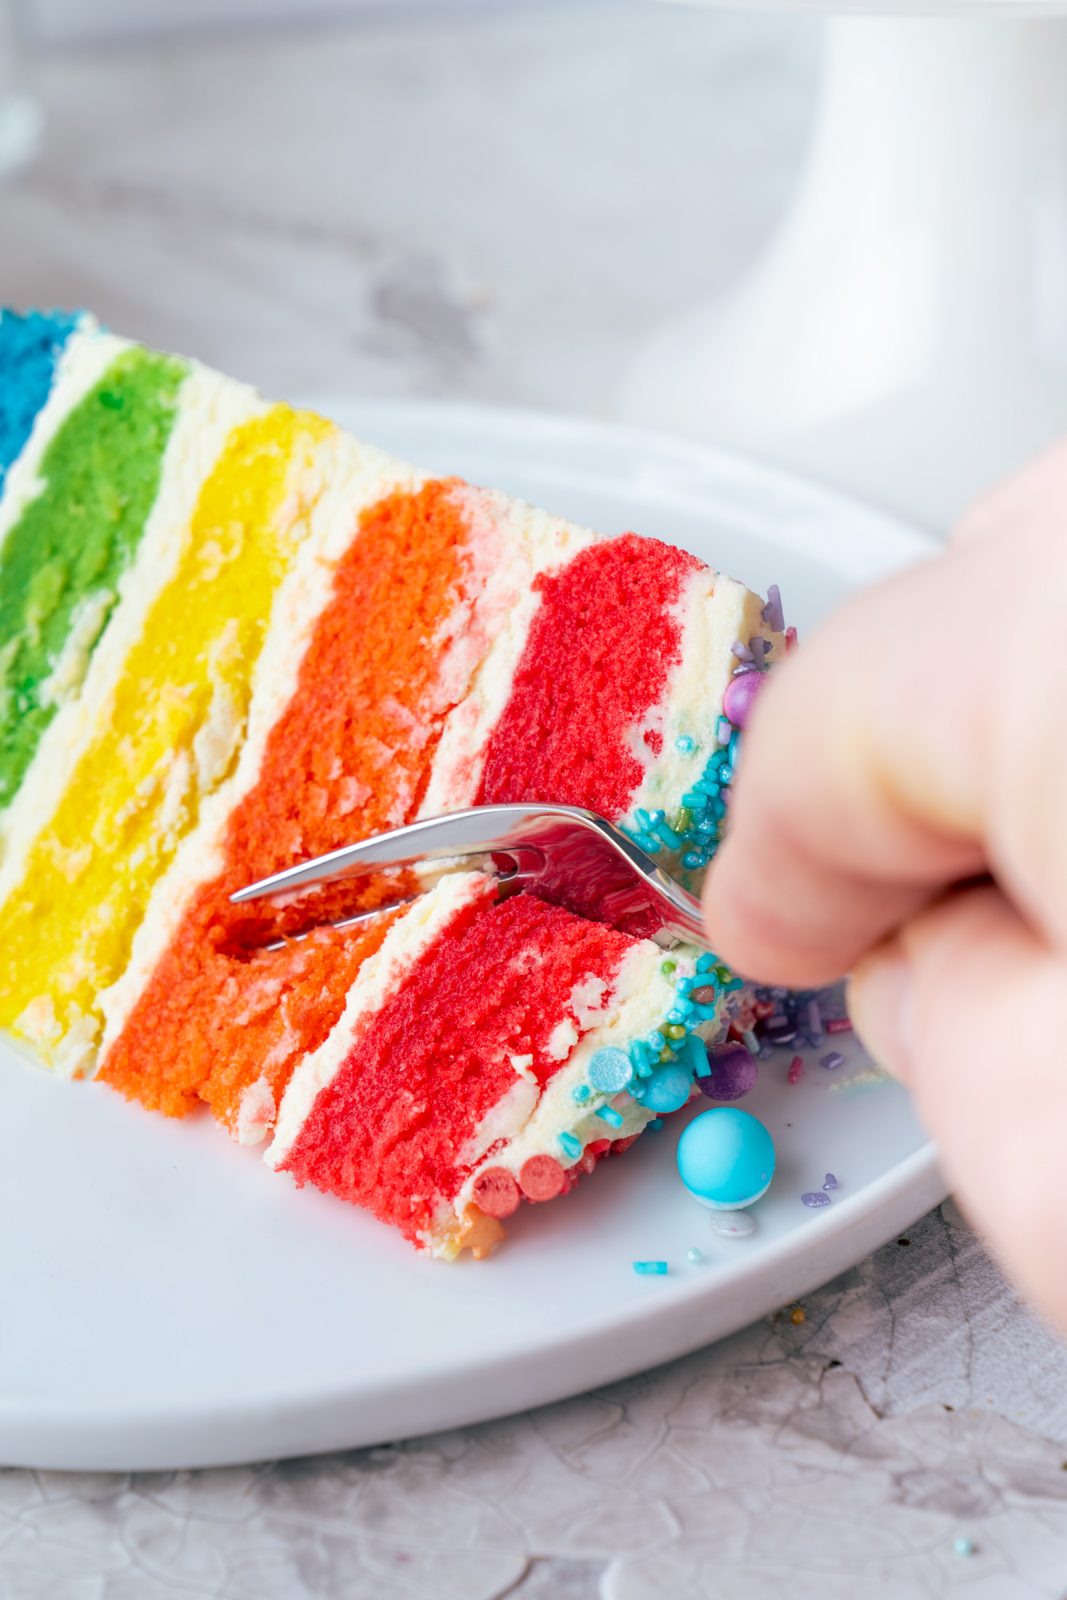 Regenbogen Torte 48 | Born this way! Heute wird es bunt und das ist gut so. Der Juni ist der alljährliche Pride-Monat und 2021 hat unsere Regenbogen-Torte ein Makeover defintiv verdient, denn ihr seid schon seit 2017 ganz verrückt nach diesem absoluten Leckerbissen! Aber was hat es mit der Regenbogenflagge eigentlich genau auf sich? Wir werden dem mal ein wenig auf den Grund gehen und dabei gibt es ein großes Stück Rainbow Cake.